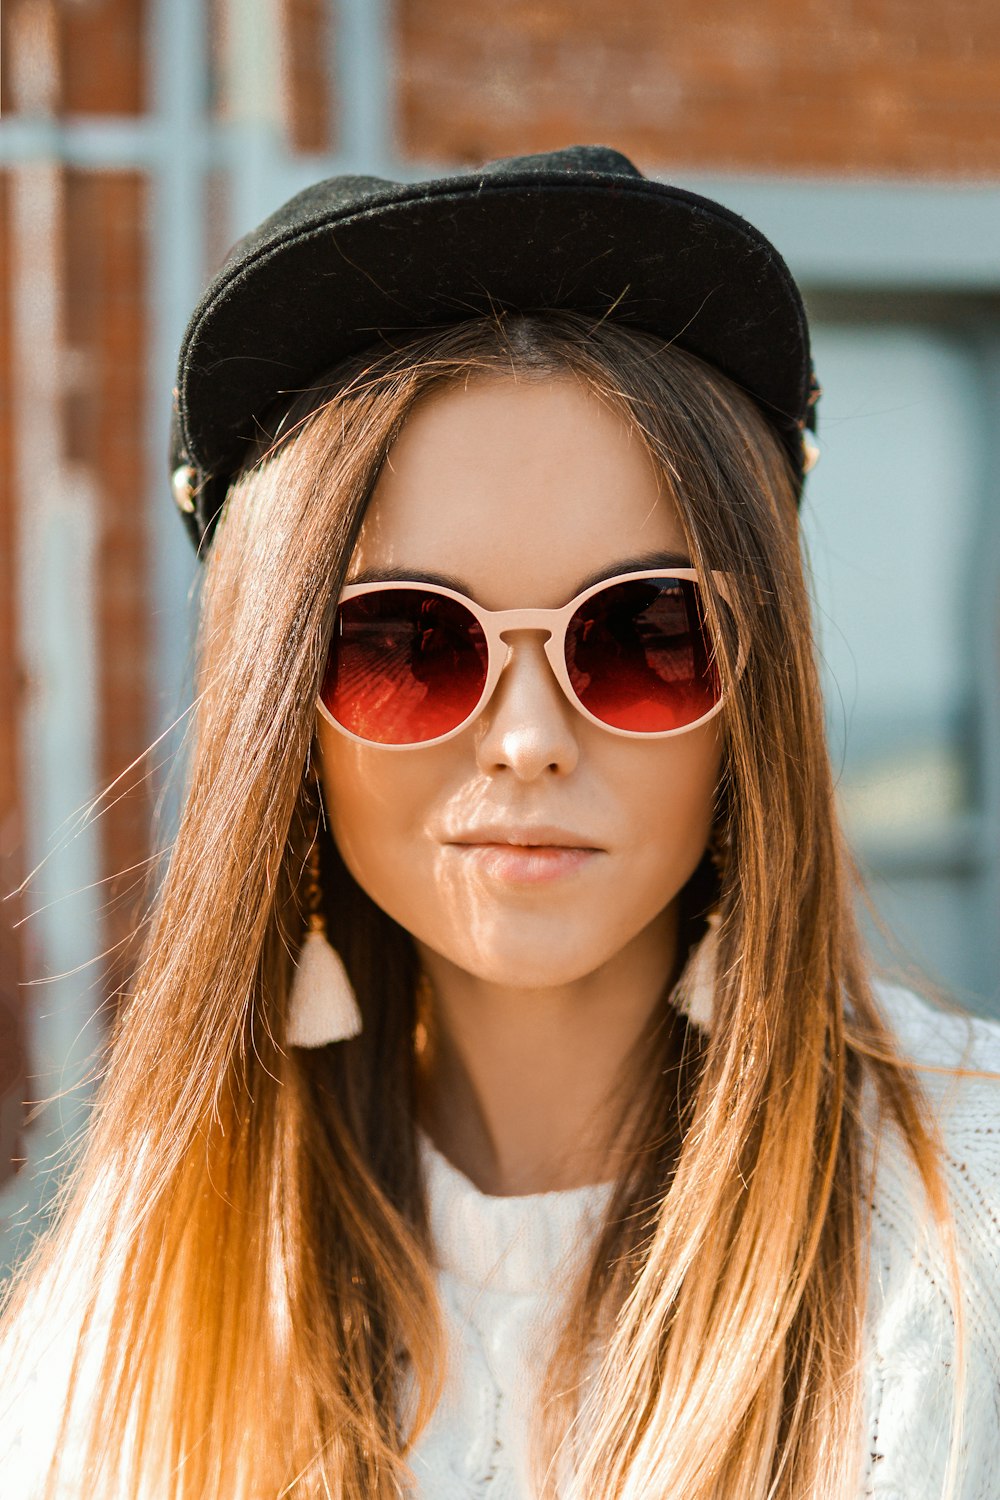 30k+ Fotos de chica con gafas de sol | Descargar imágenes gratis en Unsplash